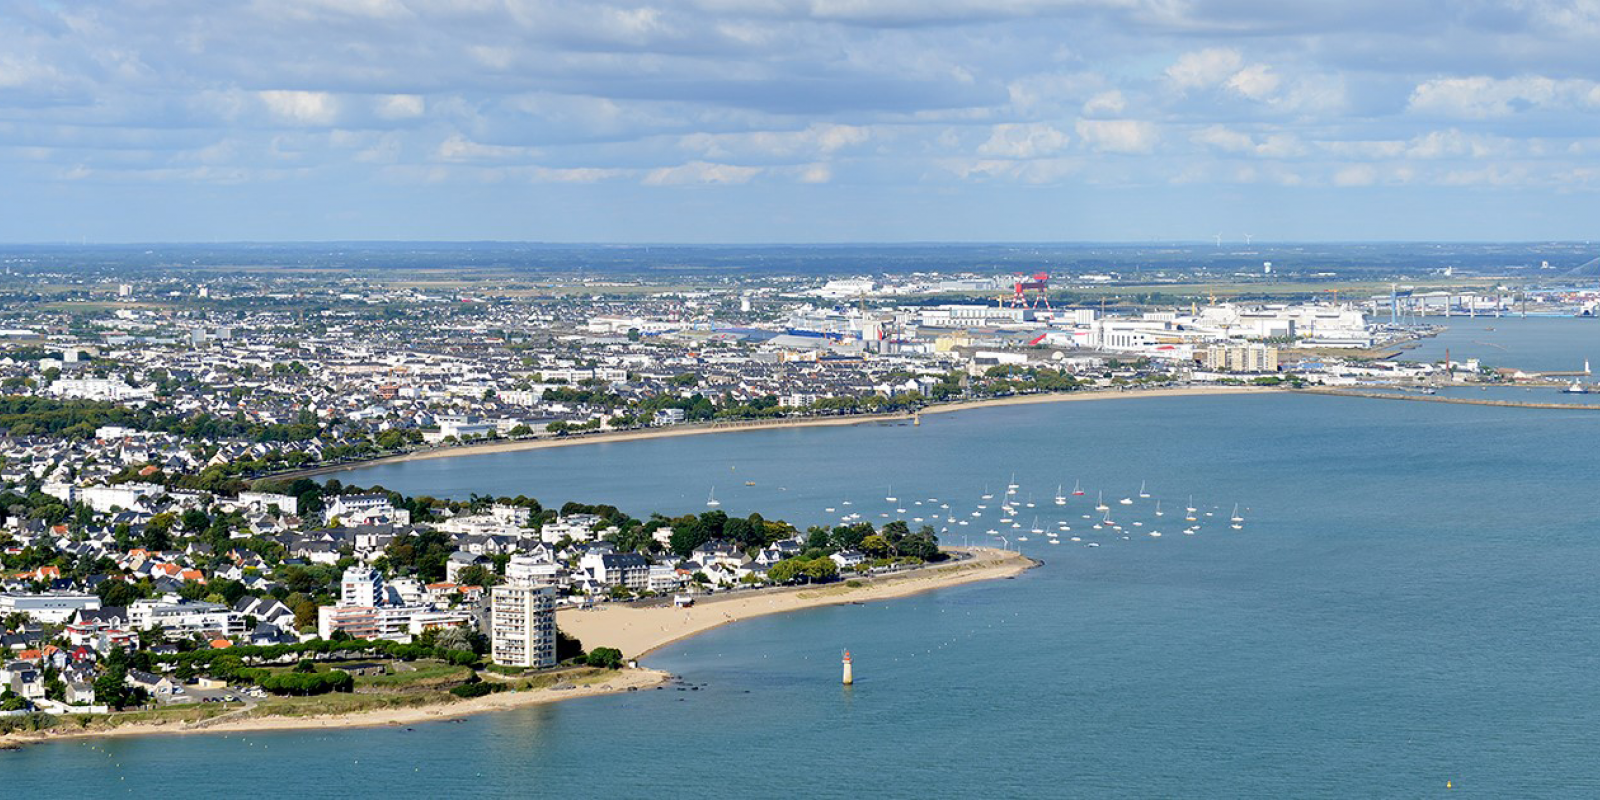 Vue aérienne de la ville de Saint-Nazaire - ©Martin LAUNAY / Ville de Saint-Nazaire